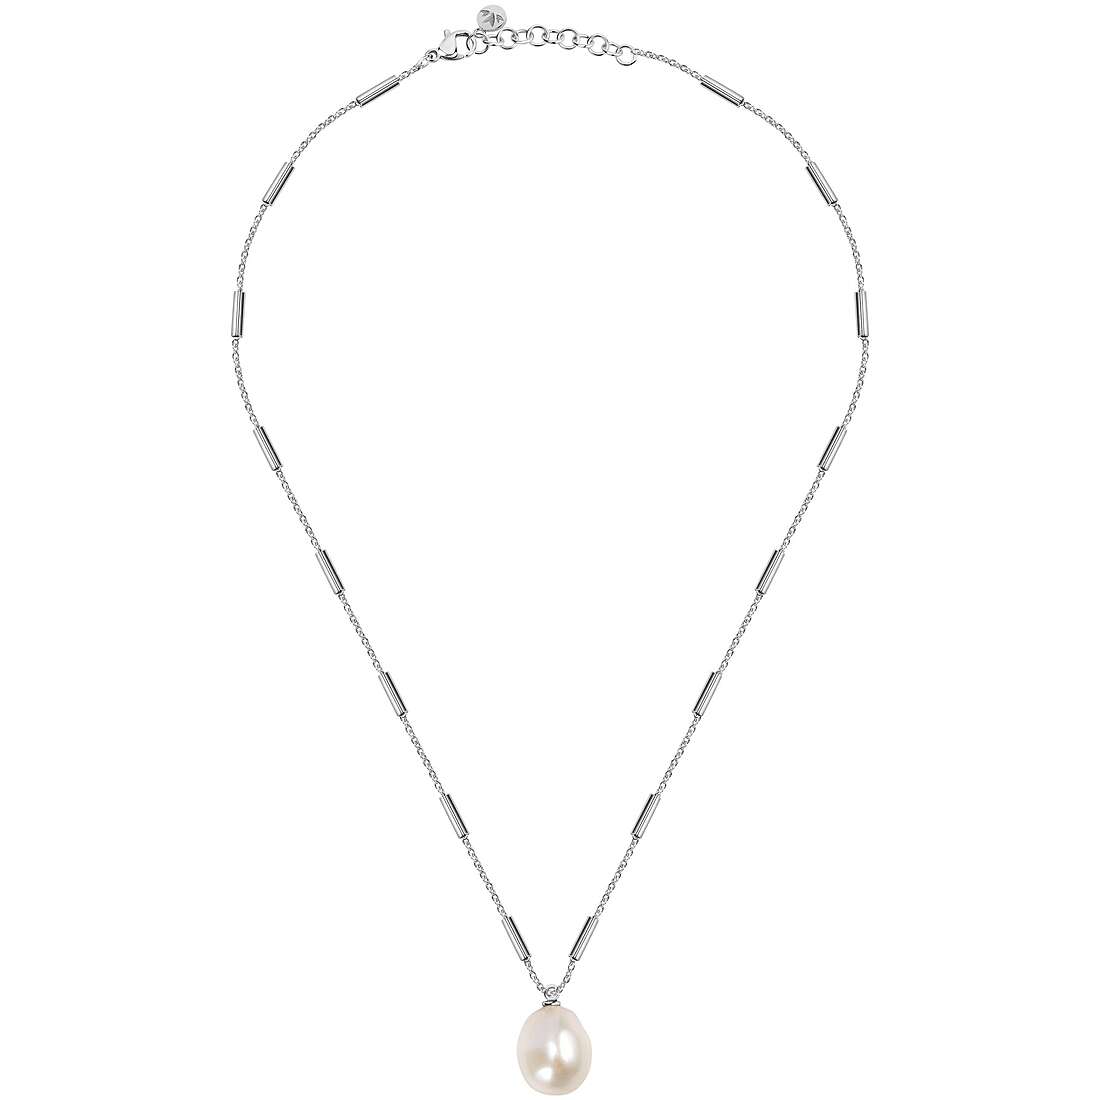 Halskette mit Perlen Morellato Oriente für frau SARI10